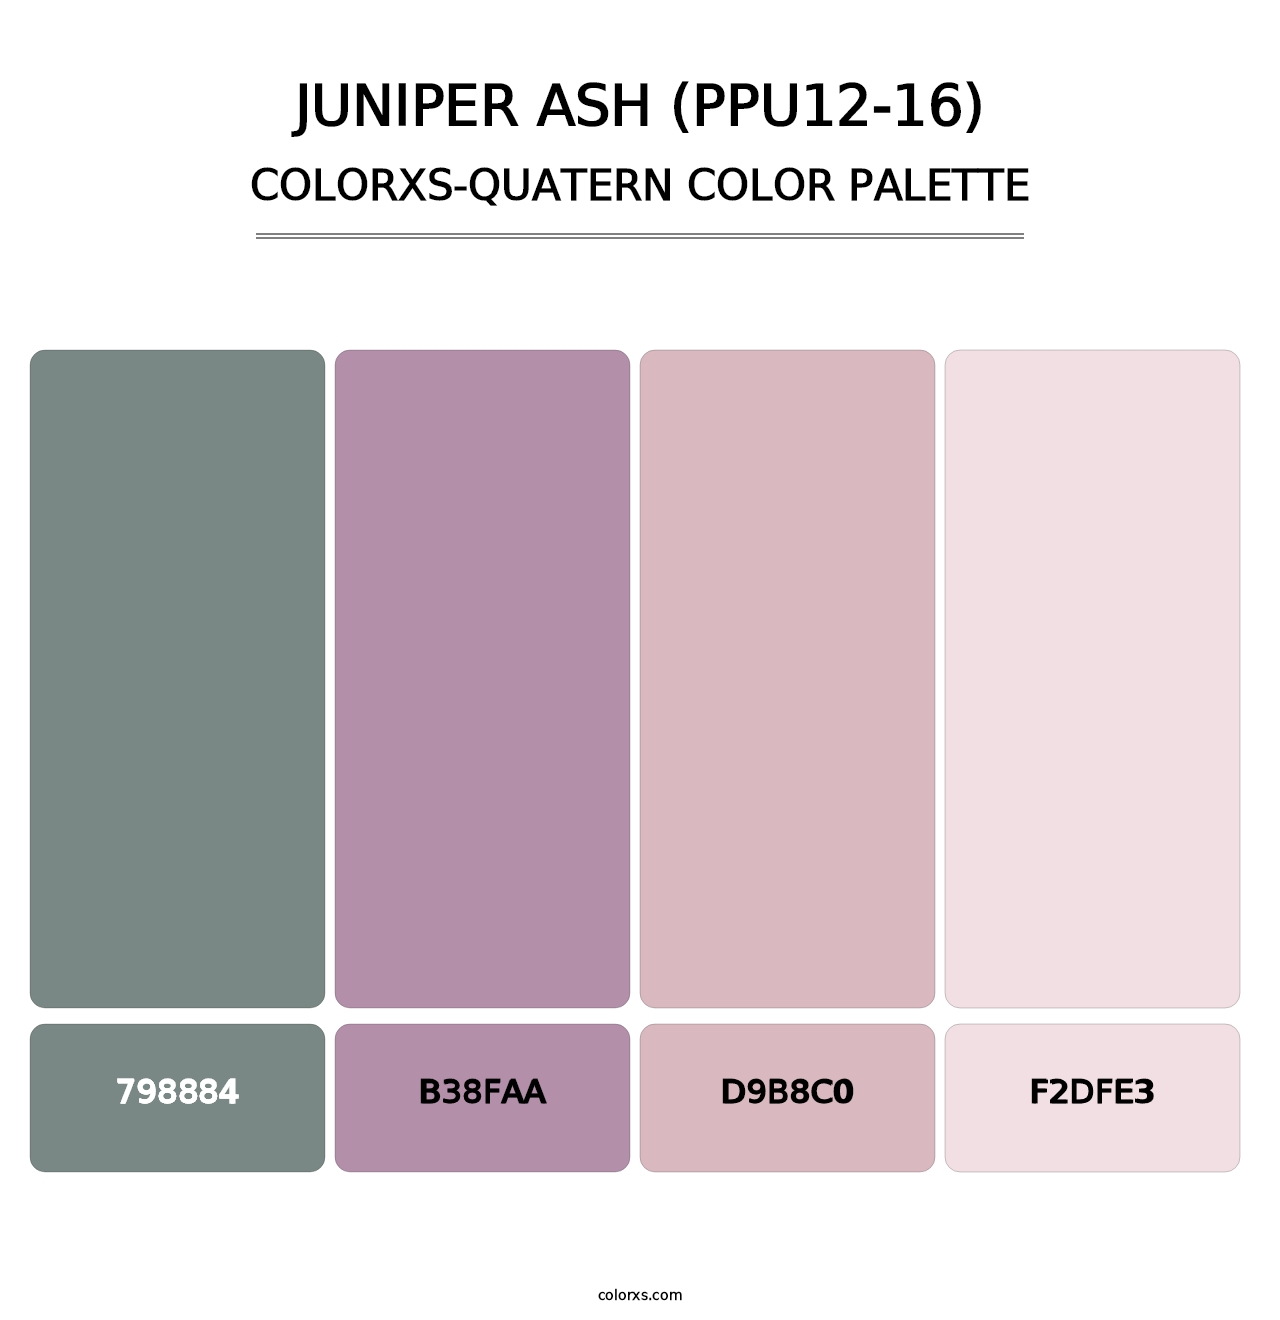 Juniper Ash (PPU12-16) - Colorxs Quatern Palette